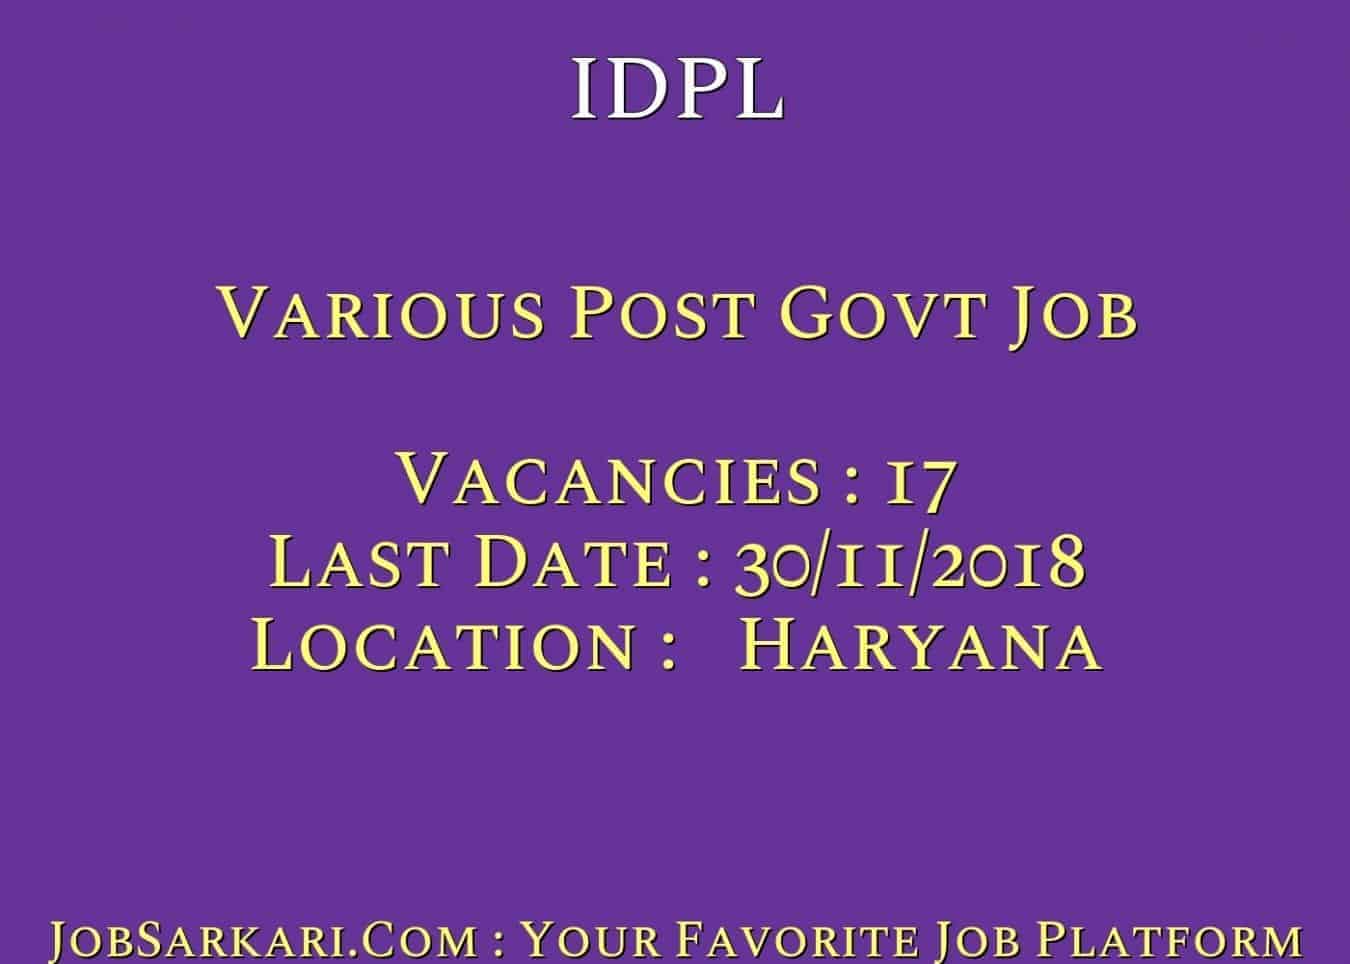 IDPL Recruitment 2018 For Various Post Govt Job